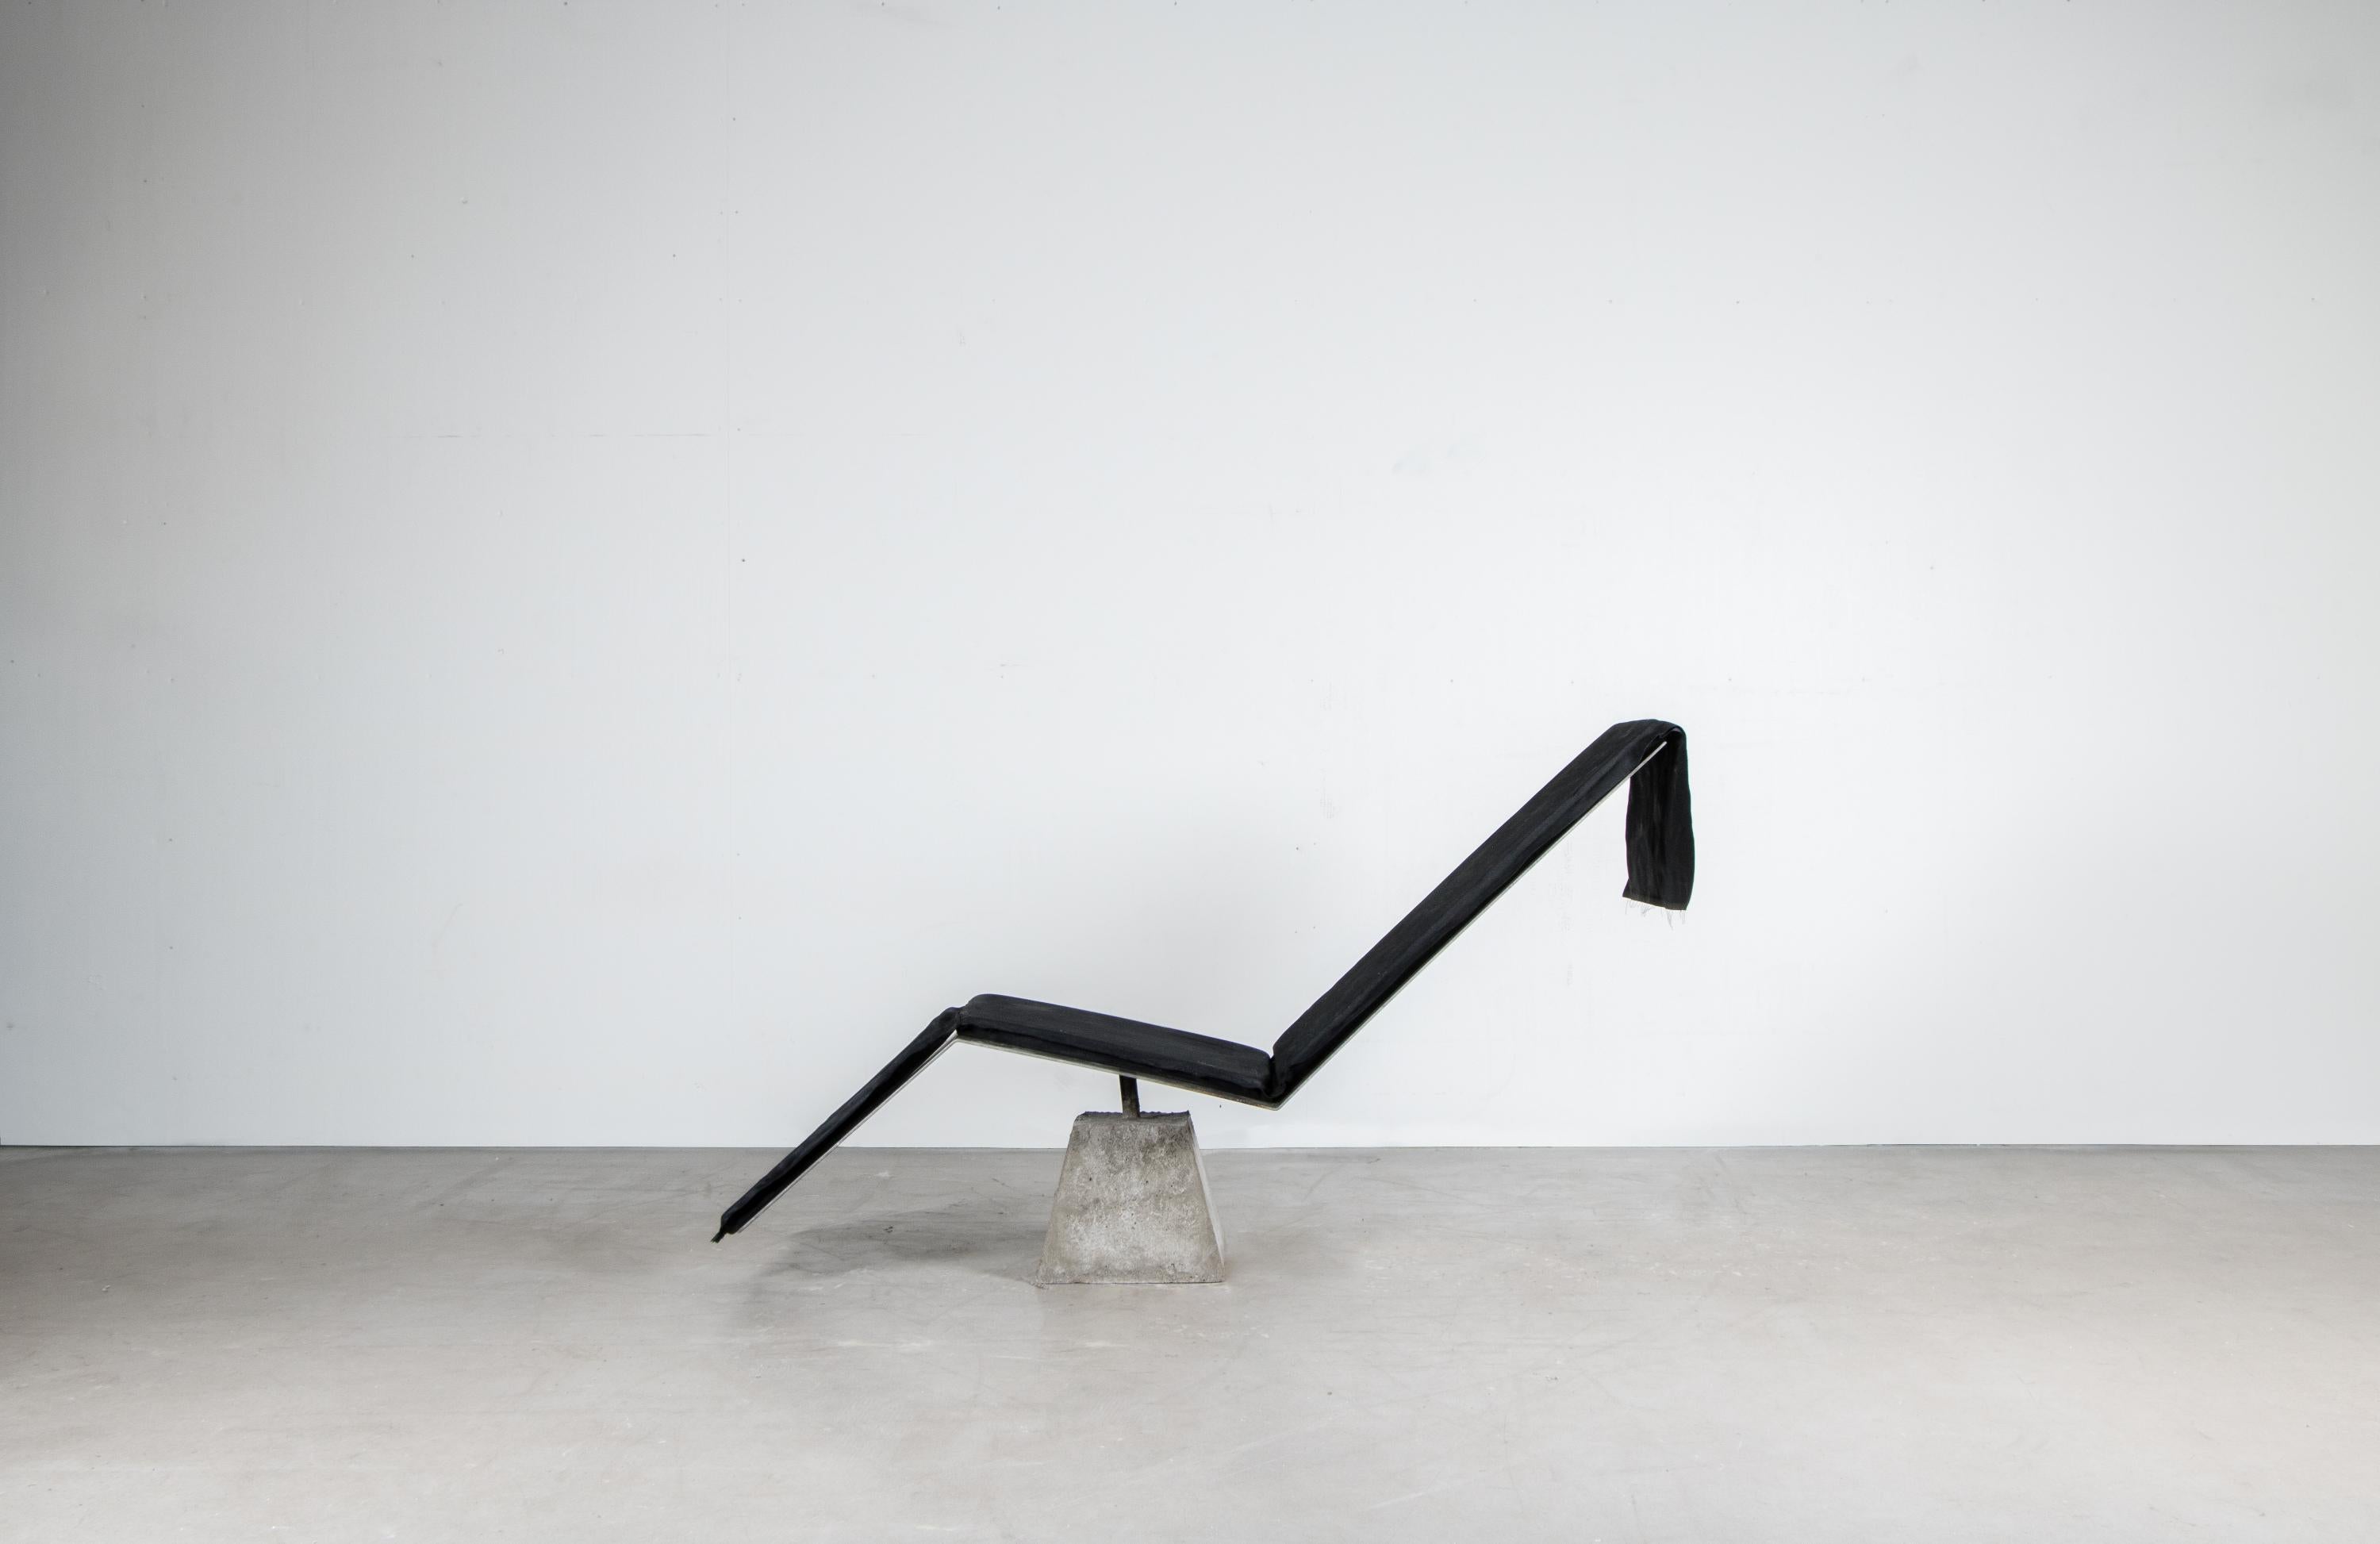 Flykt-Stuhl von Lucas Tyra Morten
2020
Limitierte Auflage von 17 Stück
Abmessungen: 150 H 83 B 50 cm
MATERIAL: Beton, gebrannter gewachster Stahl und handgewachstes Polsterkissen

Mit der Vision, ein Monument für Eskapismus zu bauen, wurde der Stuhl